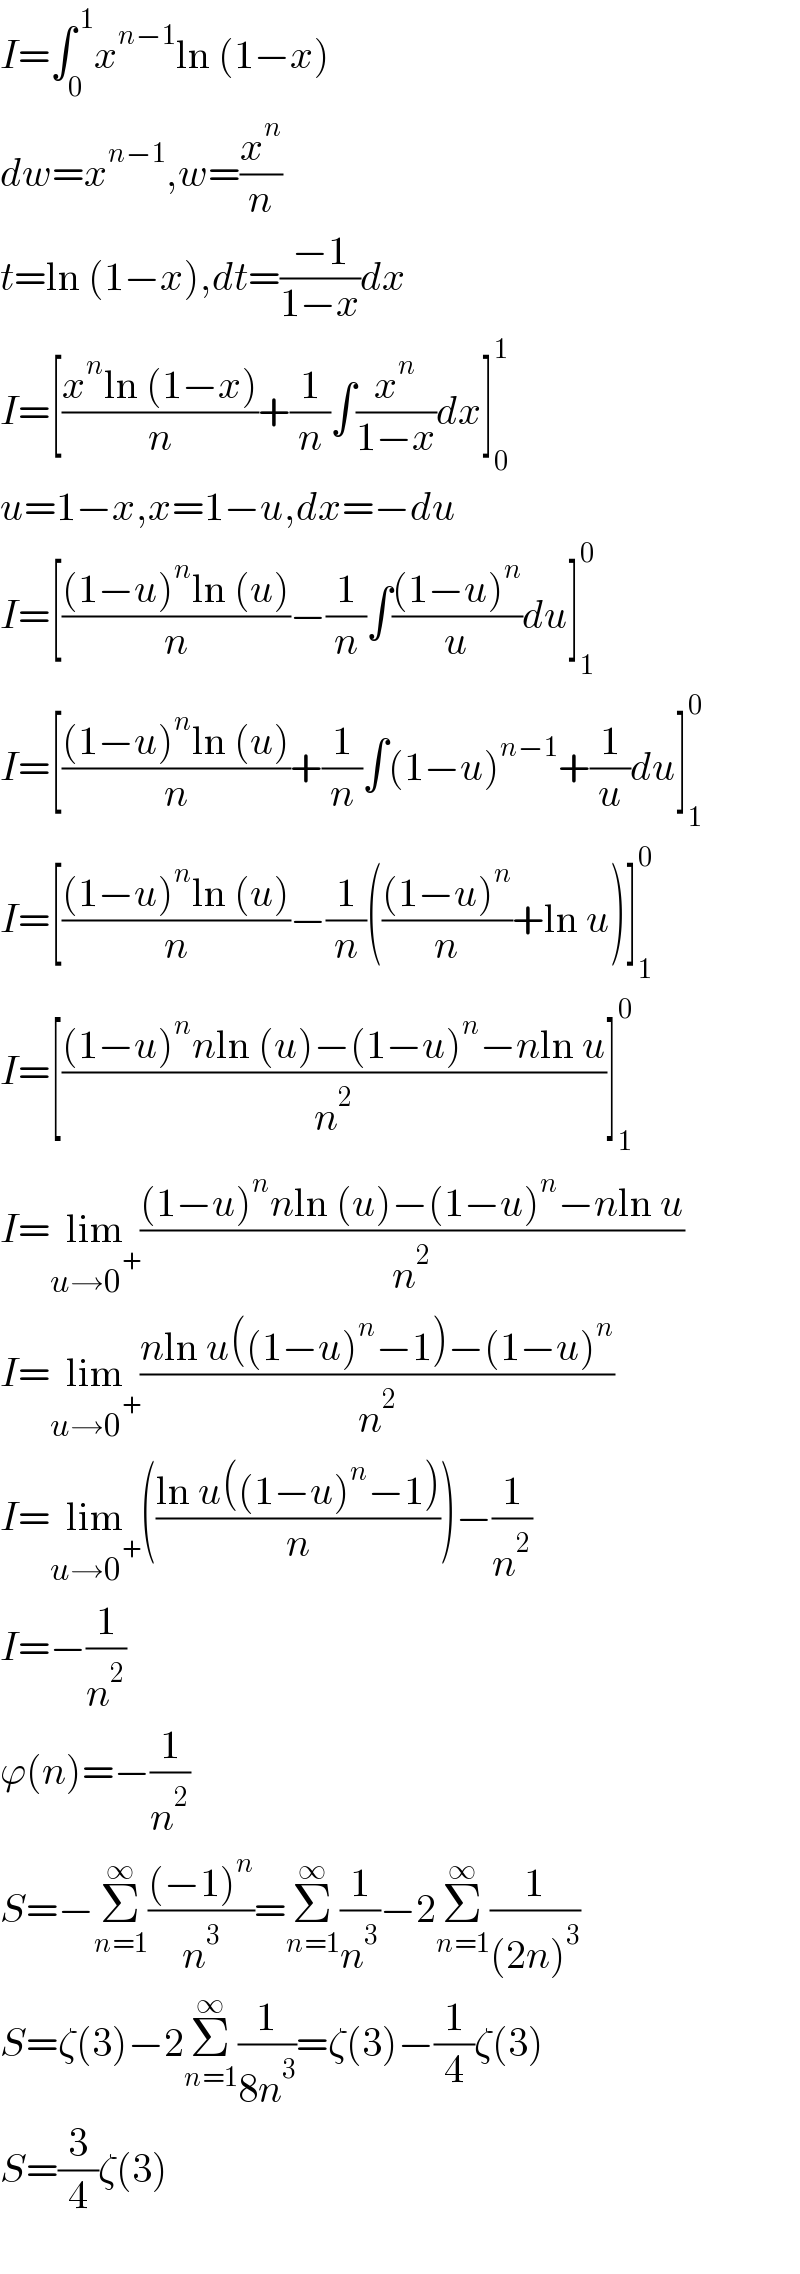 I=∫_0 ^( 1) x^(n−1) ln (1−x)  dw=x^(n−1) ,w=(x^n /n)  t=ln (1−x),dt=((−1)/(1−x))dx  I=[((x^n ln (1−x))/n)+(1/n)∫(x^n /(1−x))dx]_0 ^1   u=1−x,x=1−u,dx=−du  I=[(((1−u)^n ln (u))/n)−(1/n)∫(((1−u)^n )/u)du]_1 ^0   I=[(((1−u)^n ln (u))/n)+(1/n)∫(1−u)^(n−1) +(1/u)du]_1 ^0   I=[(((1−u)^n ln (u))/n)−(1/n)((((1−u)^n )/n)+ln u)]_1 ^0   I=[(((1−u)^n nln (u)−(1−u)^n −nln u)/n^2 )]_1 ^0   I=lim_(u→0^+ ) (((1−u)^n nln (u)−(1−u)^n −nln u)/n^2 )  I=lim_(u→0^+ ) ((nln u((1−u)^n −1)−(1−u)^n )/n^2 )  I=lim_(u→0^+ ) (((ln u((1−u)^n −1))/n))−(1/n^2 )  I=−(1/n^2 )  ϕ(n)=−(1/n^2 )  S=−Σ_(n=1) ^∞ (((−1)^n )/n^3 )=Σ_(n=1) ^∞ (1/n^3 )−2Σ_(n=1) ^∞ (1/((2n)^3 ))  S=ζ(3)−2Σ_(n=1) ^∞ (1/(8n^3 ))=ζ(3)−(1/4)ζ(3)  S=(3/4)ζ(3)    